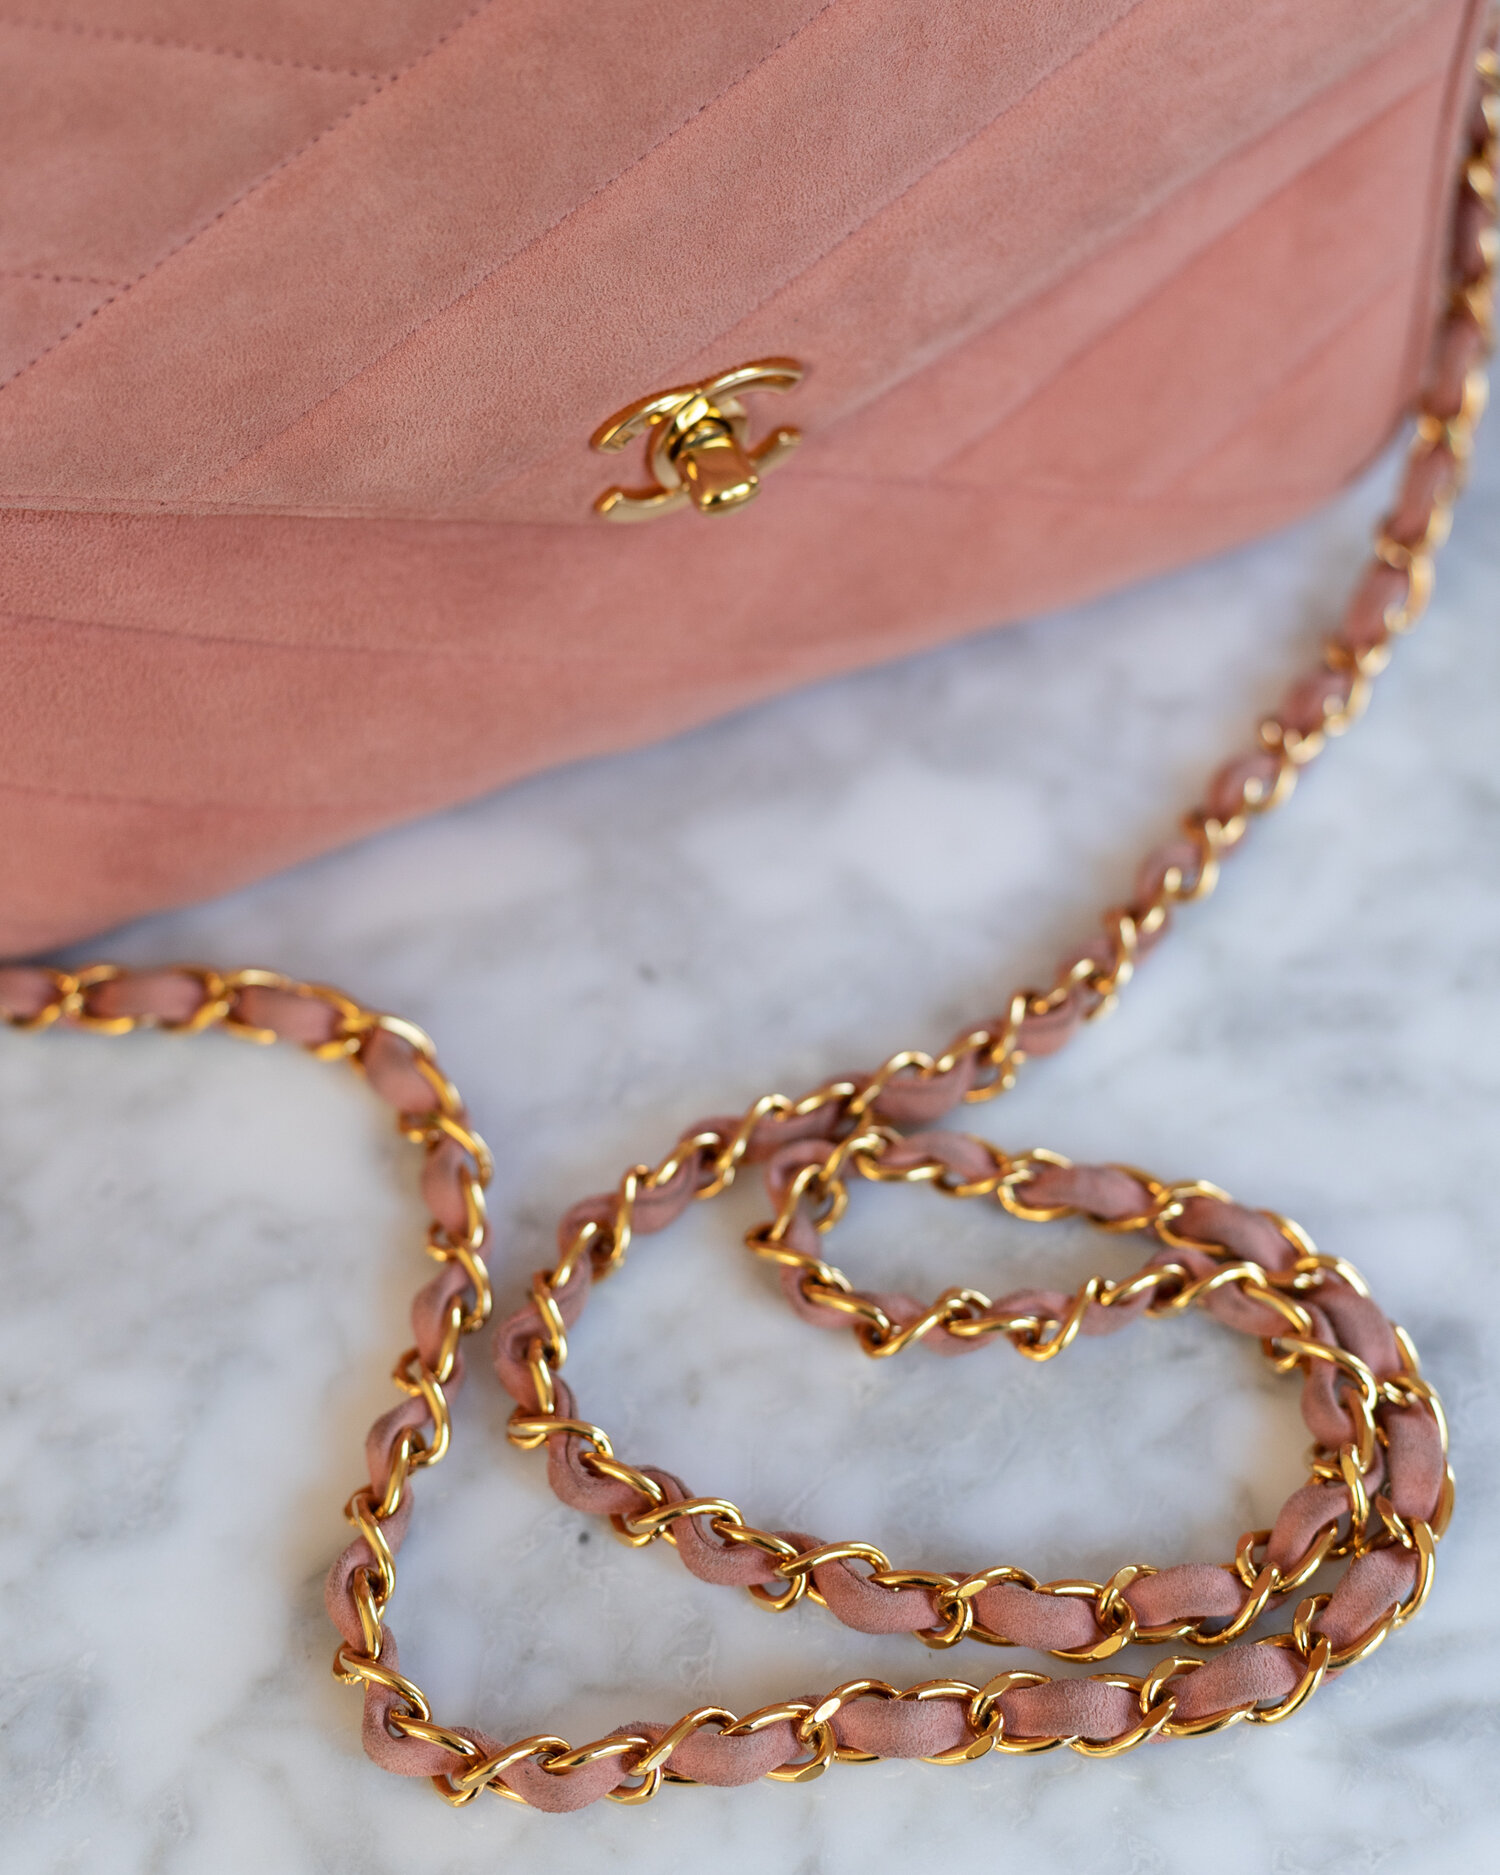 Vintage Chanel Camera Bag in Coral Pink suede leather — singulié